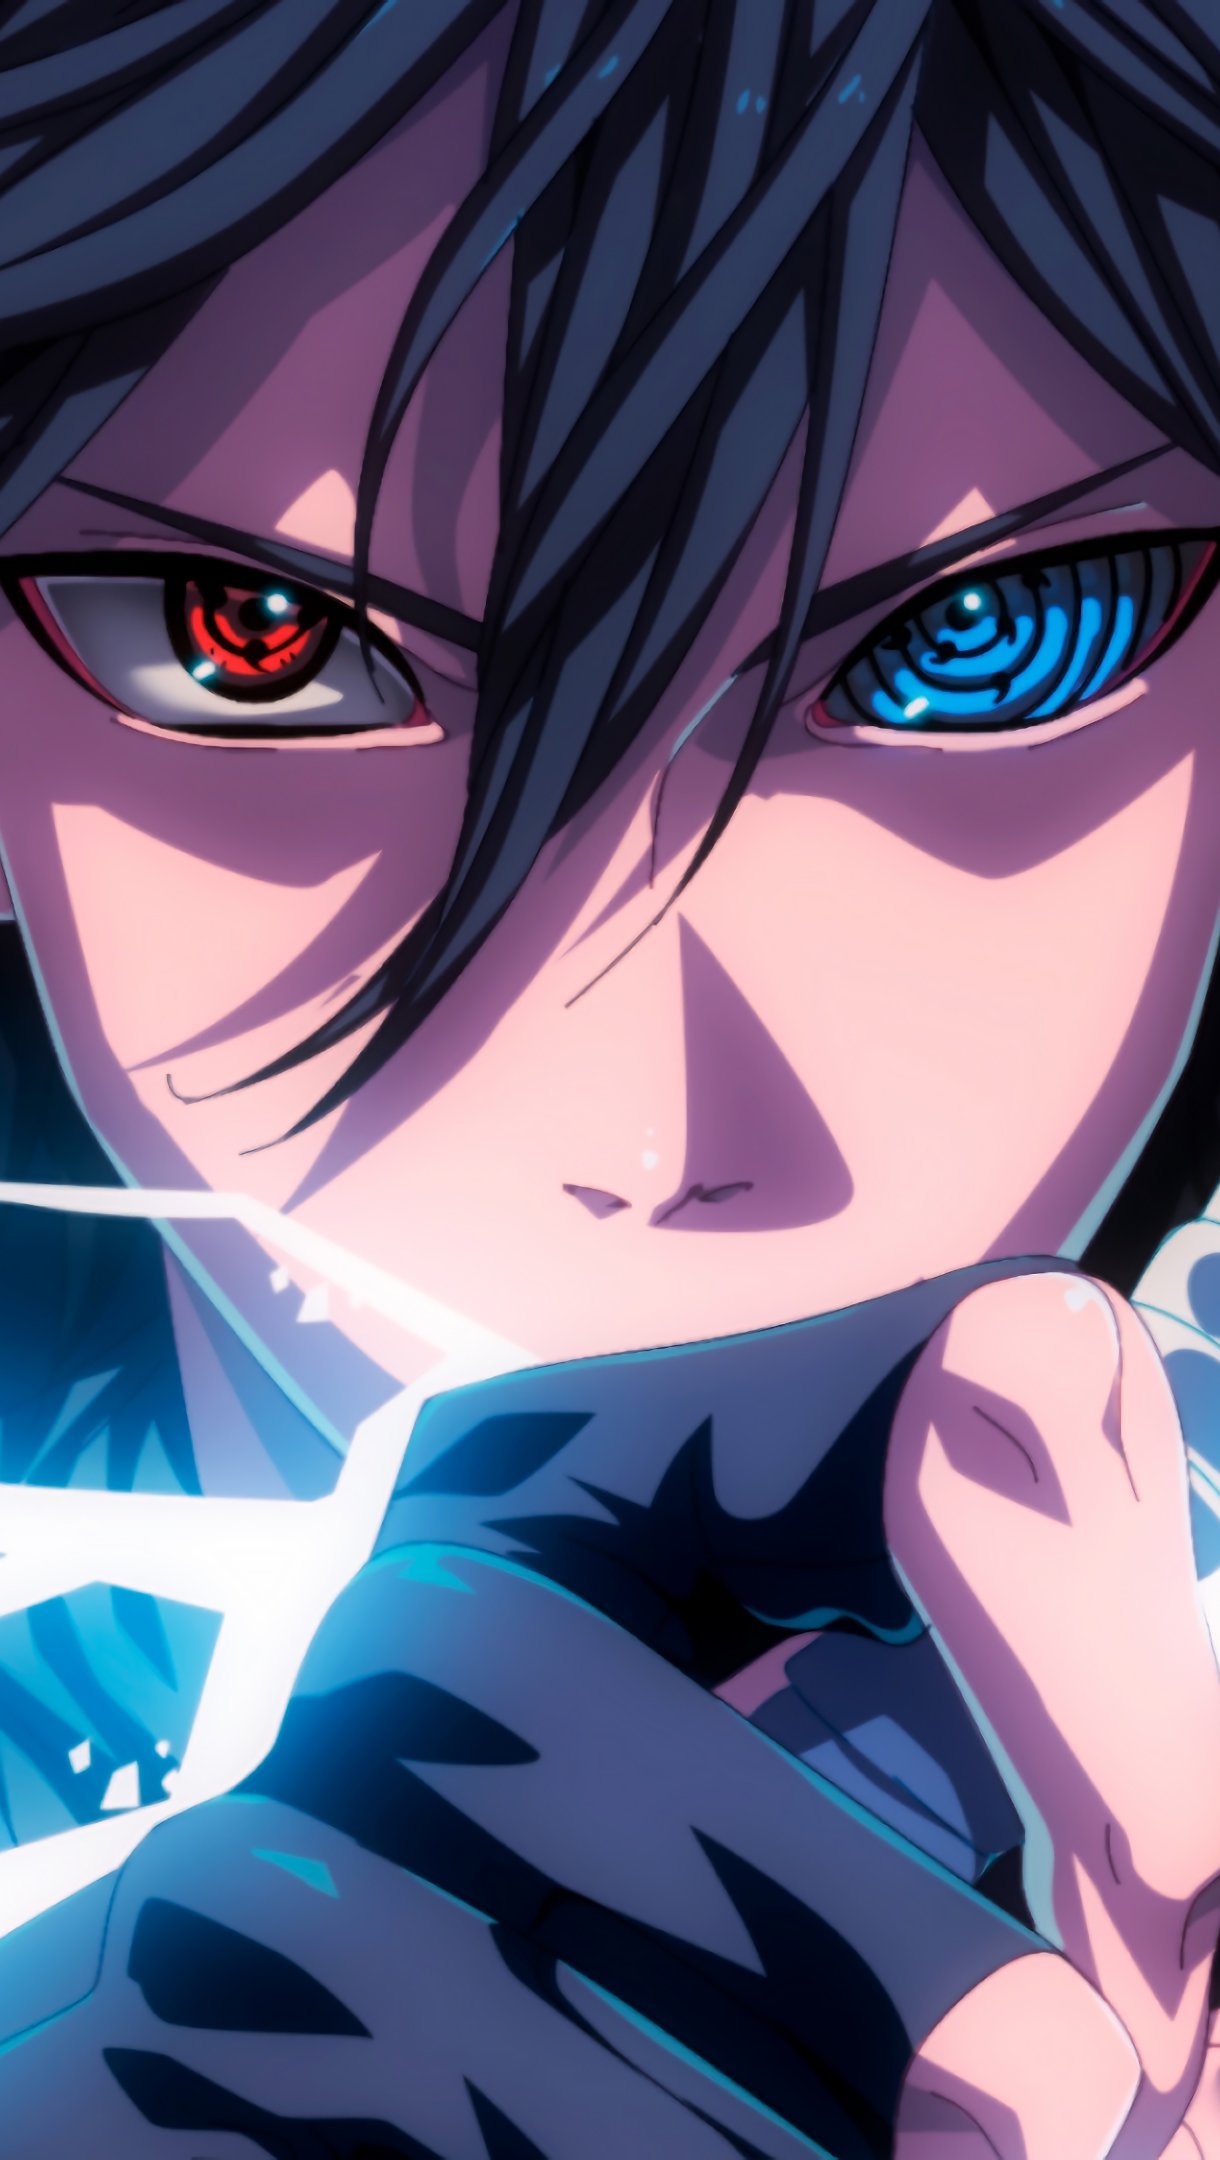 Fondos de pantalla Anime Sasuke Sharingan Rinnegan Eyes Lightning Vertical